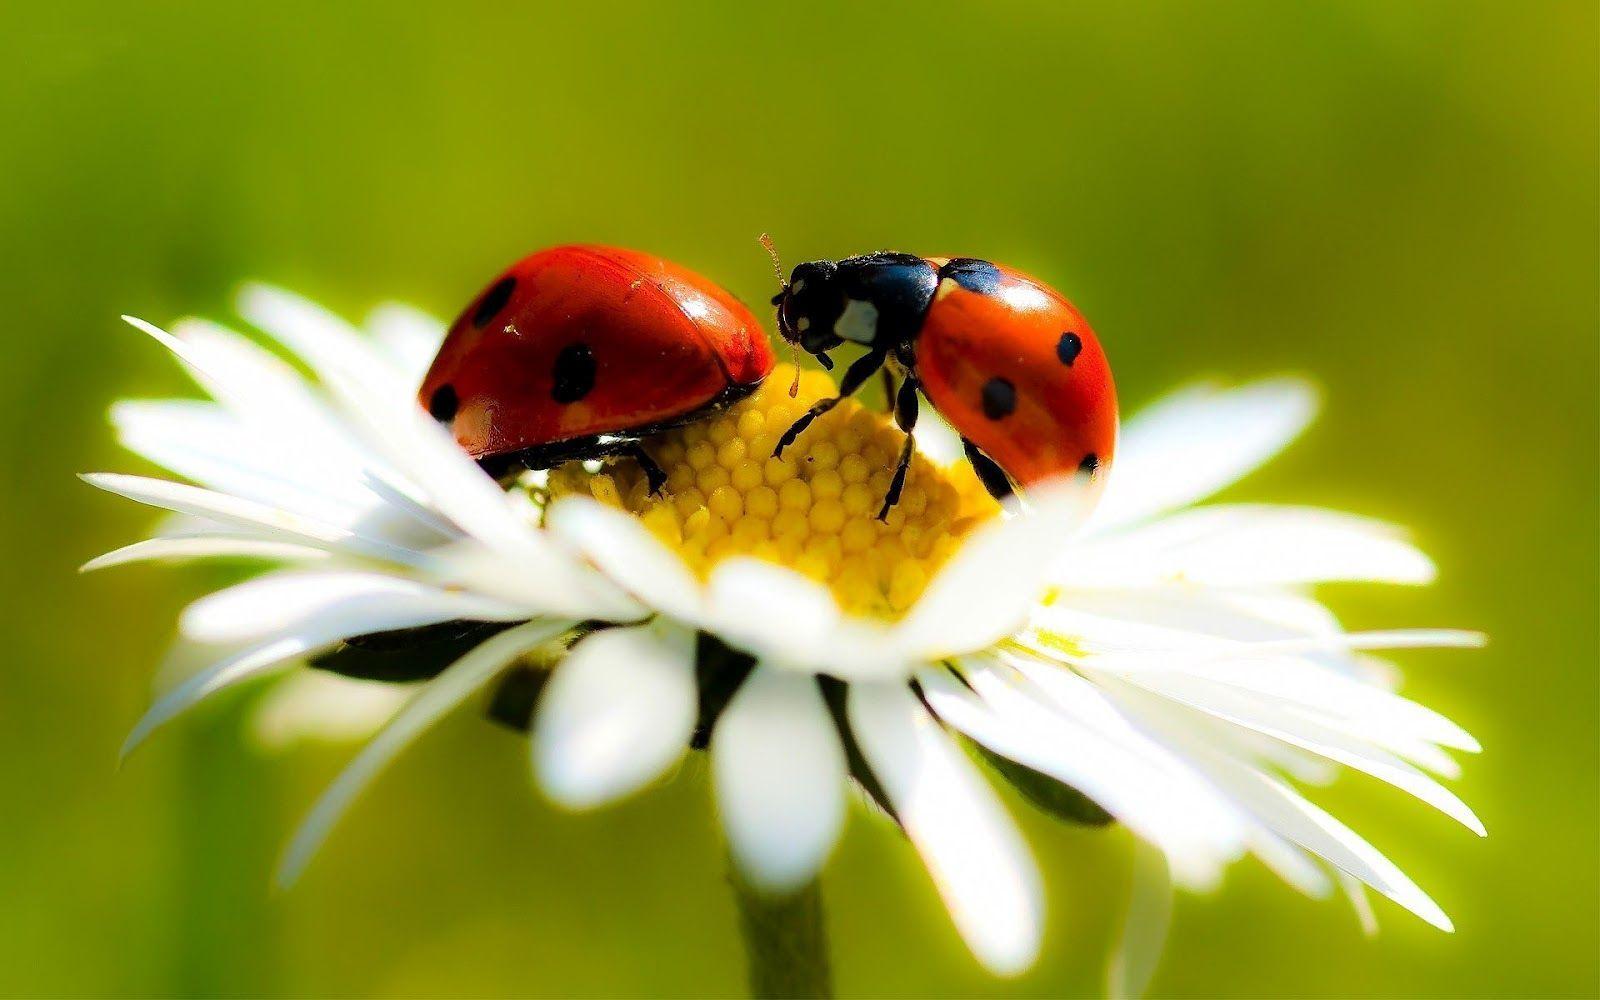 Wallpaper of ladybugs